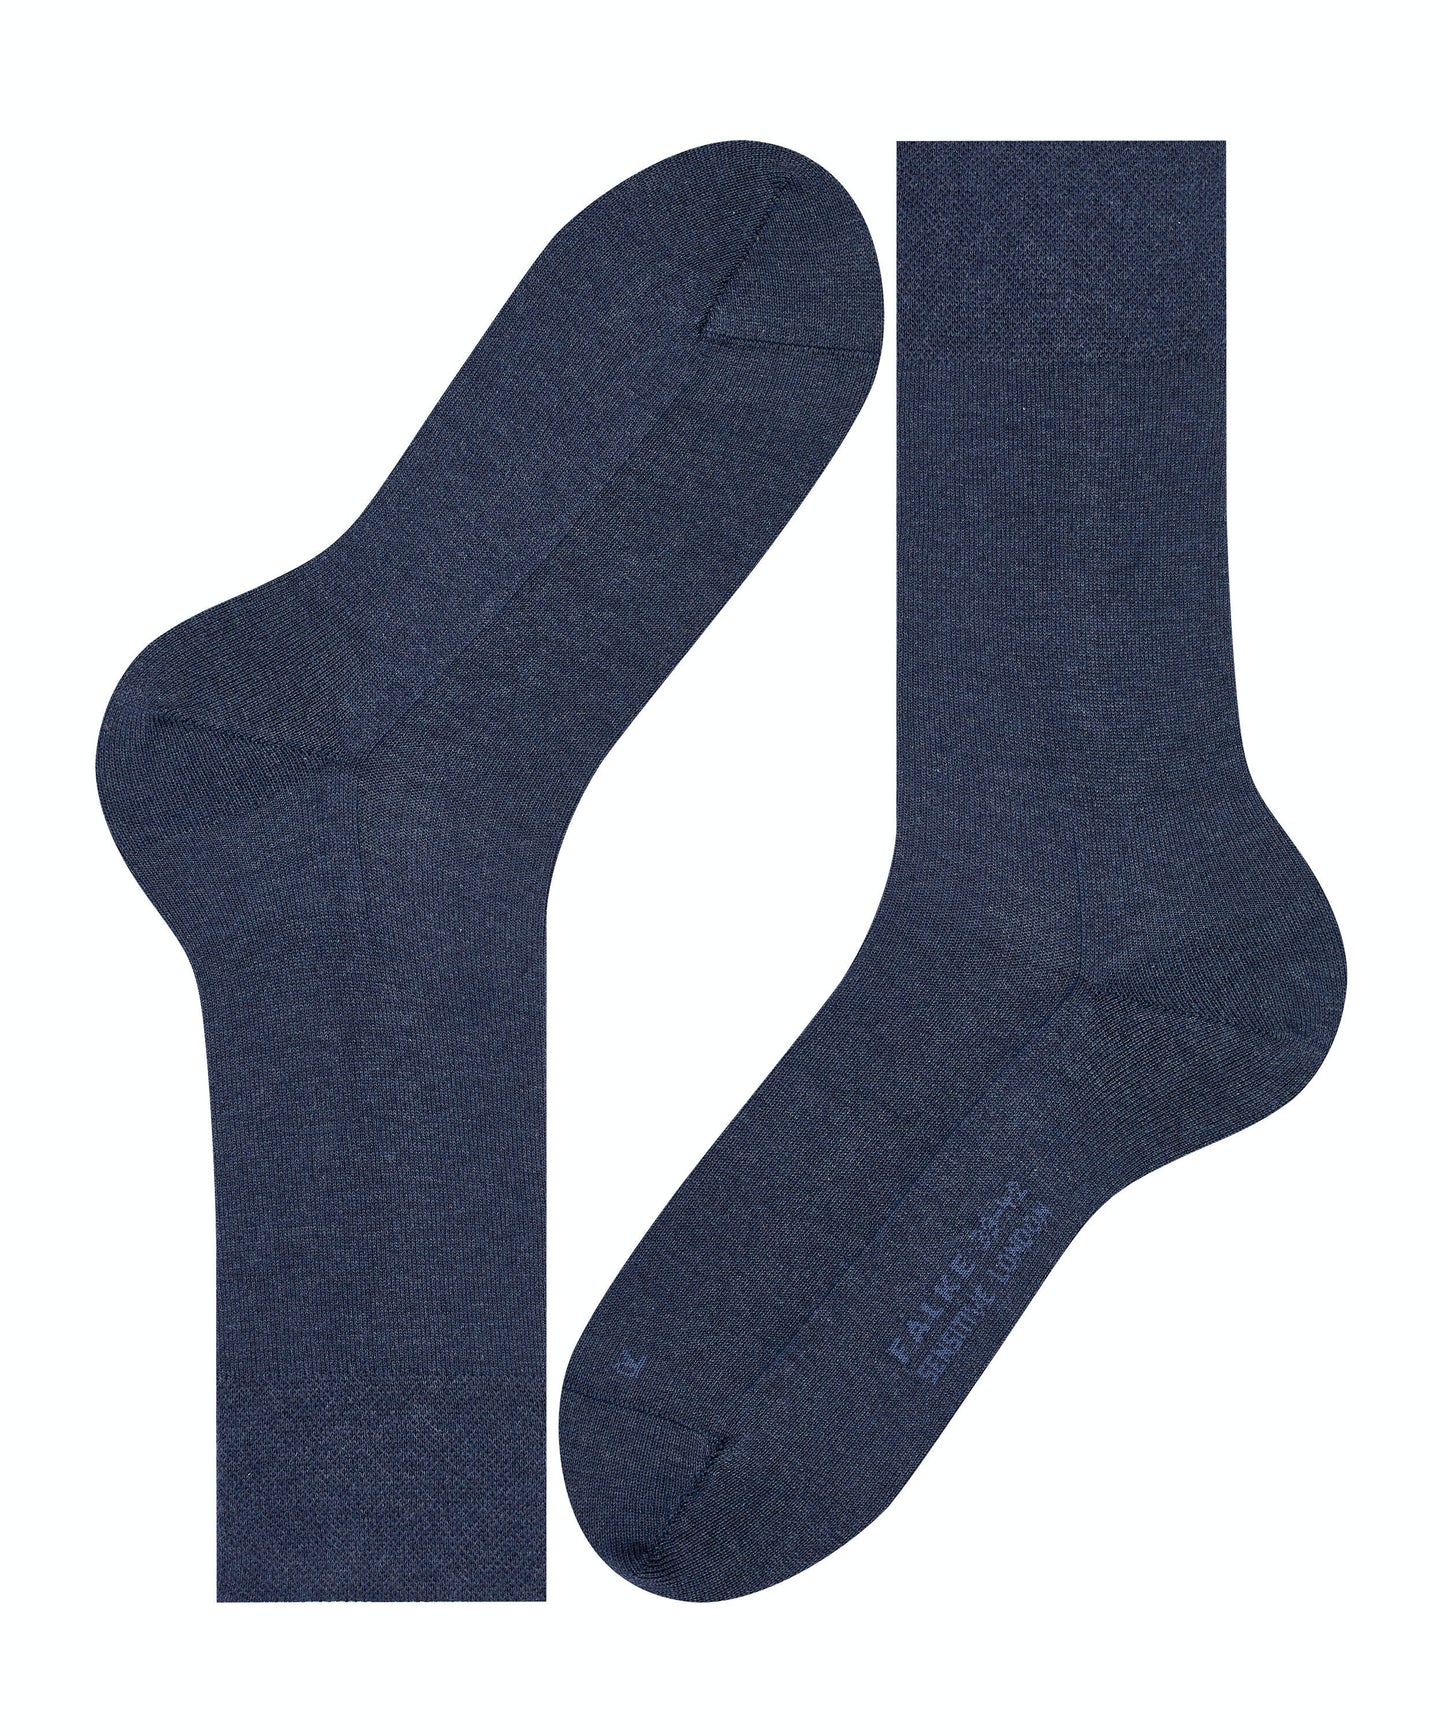 FALKE Sensitive London Socks Navy Melange